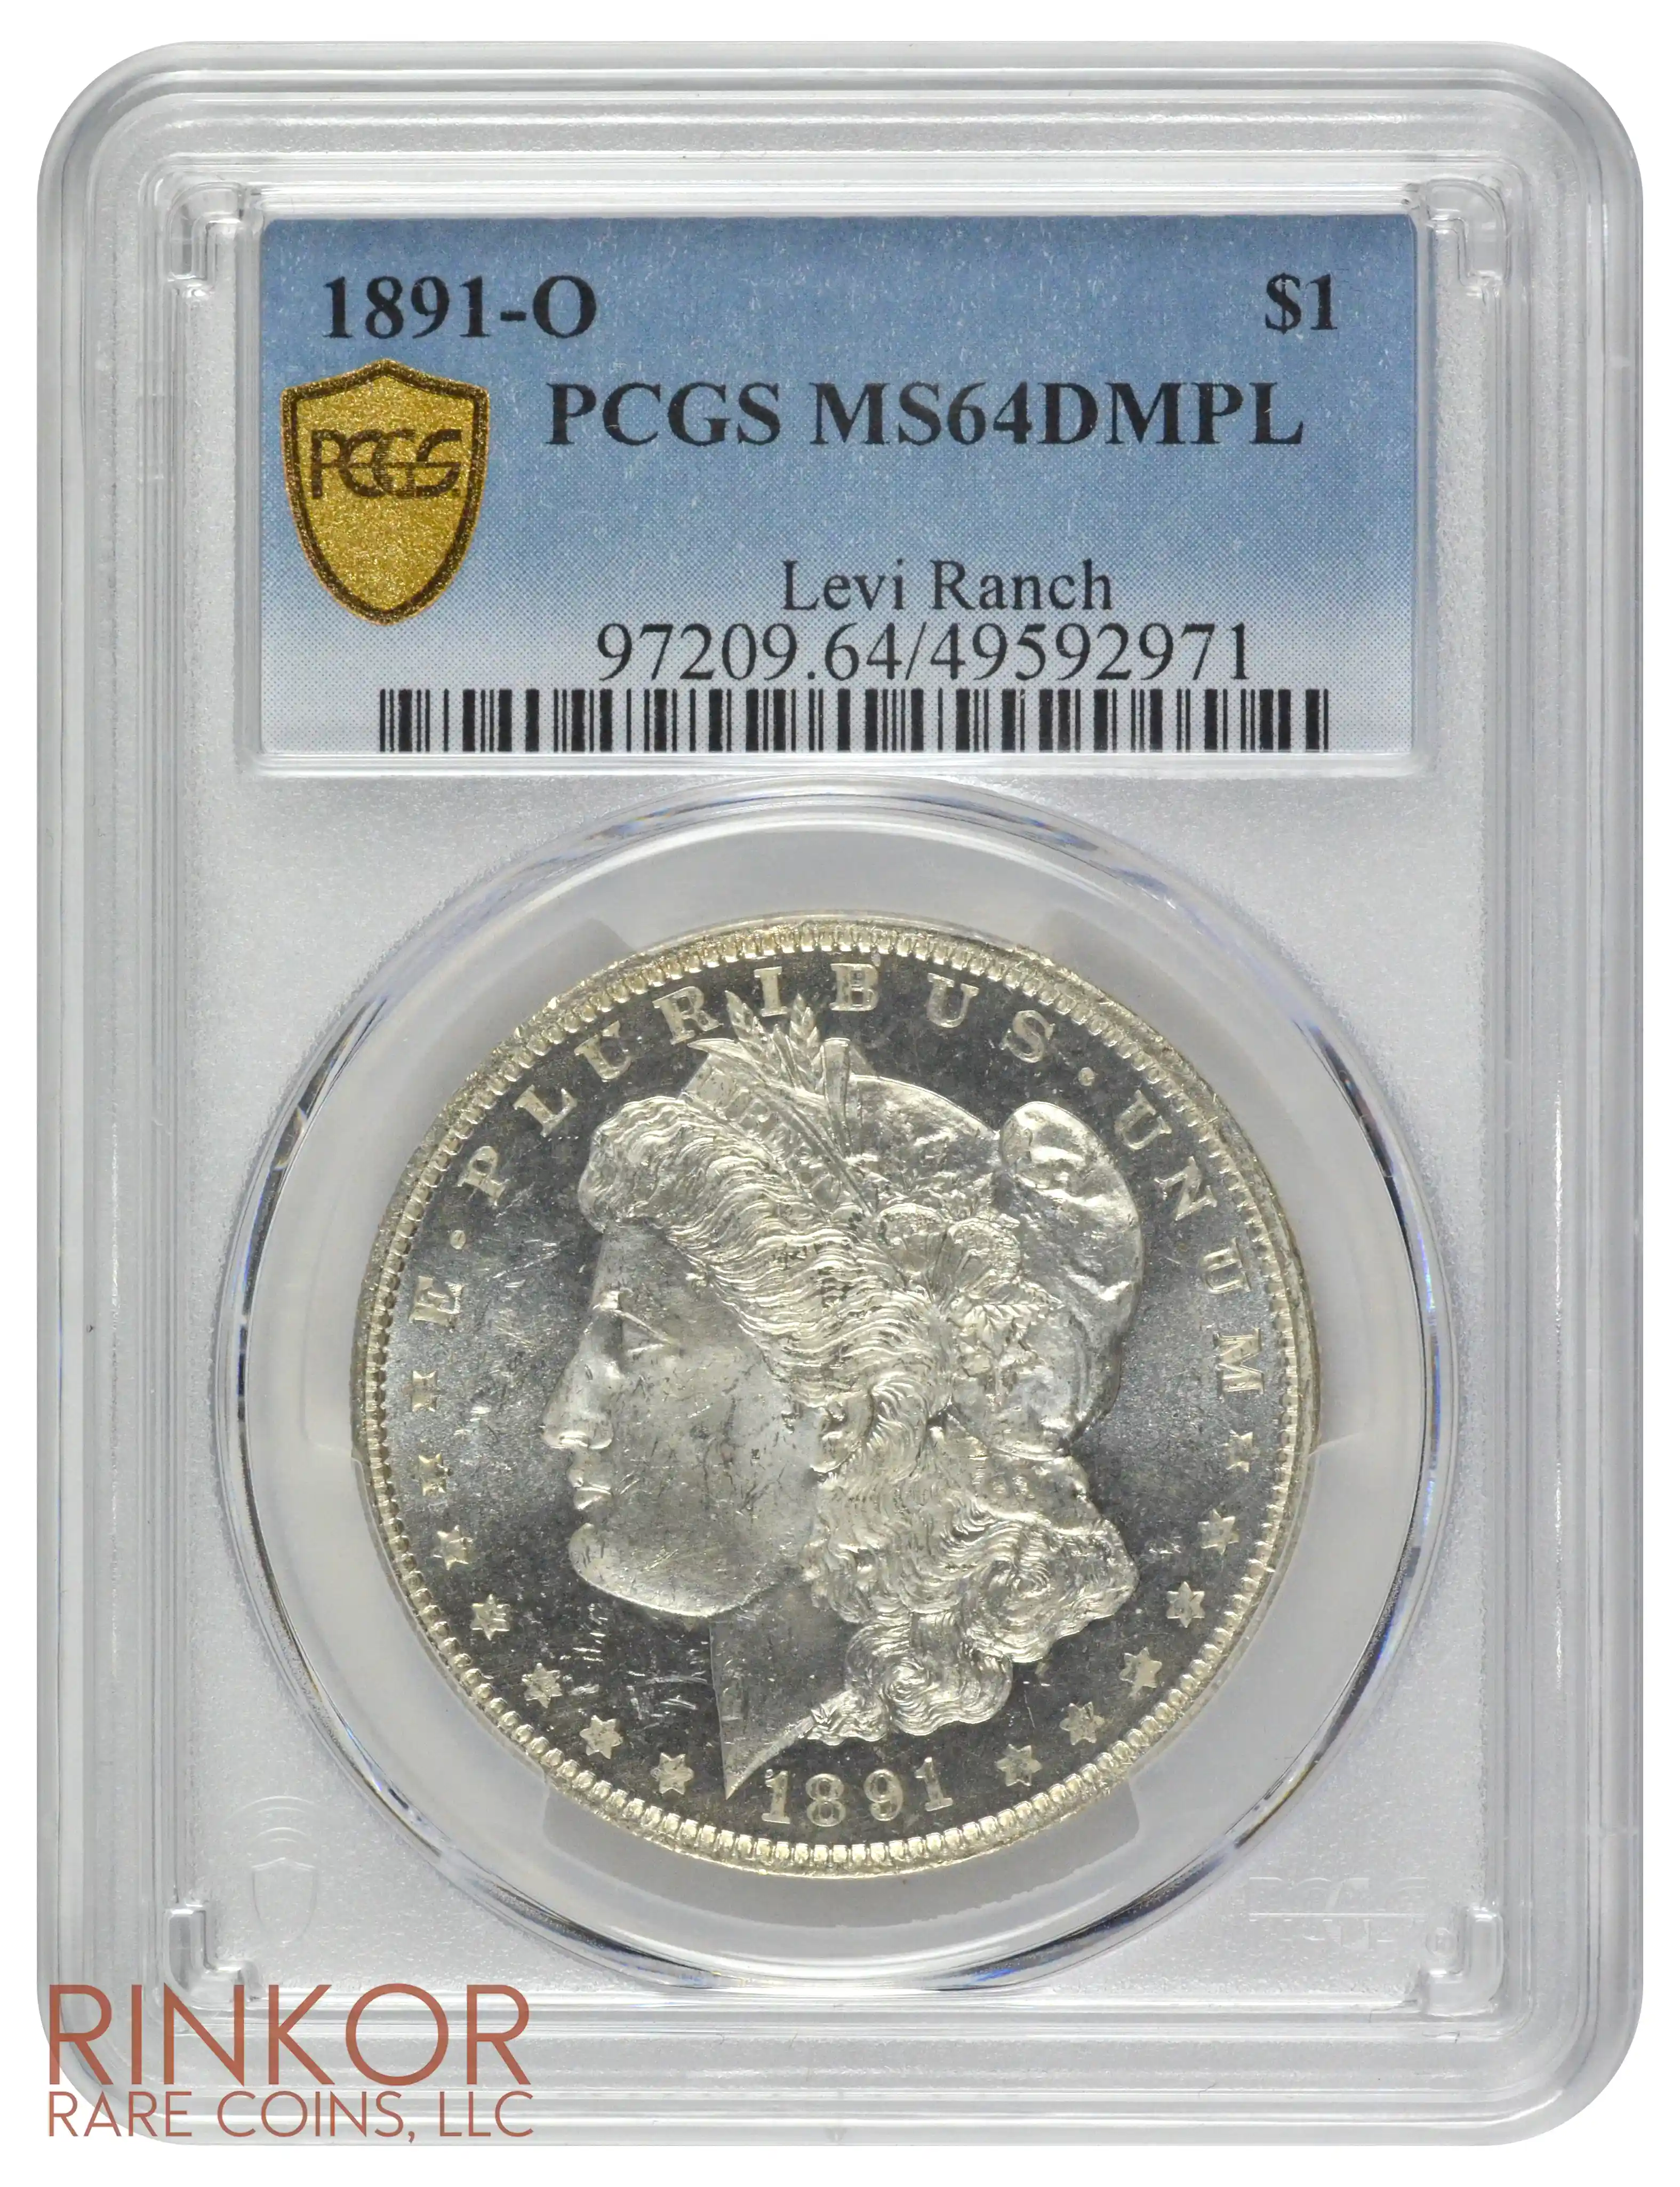 1891-O $1 PCGS MS 64 DMPL 